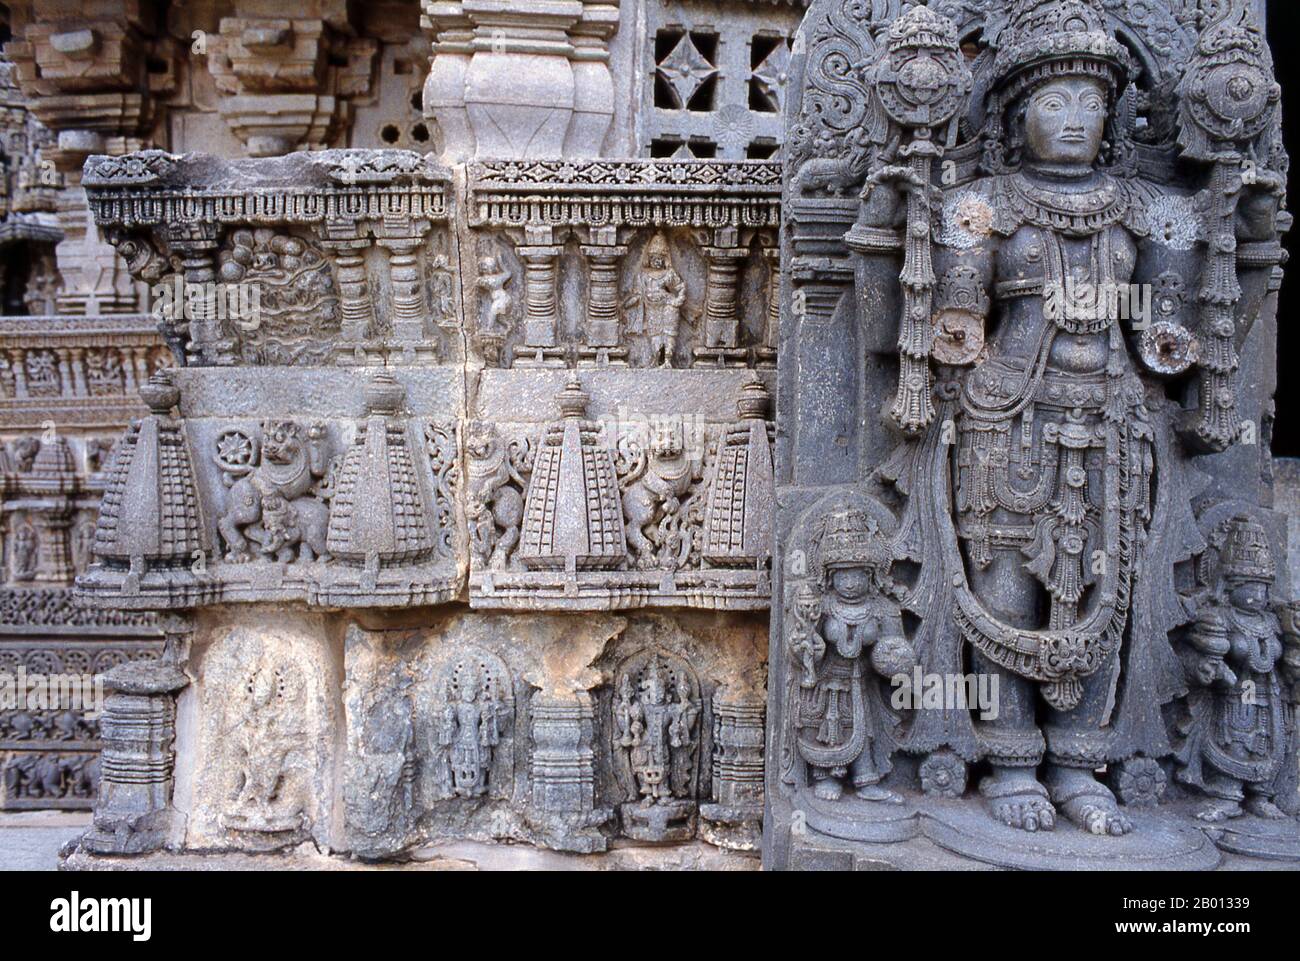 Indien: Chennakesava-Tempel, Somnathpura, in der Nähe von Mysore, Karnataka. Der Chennakesava-Tempel ist eines der schönsten Beispiele der Hoysala-Architektur. Dieser Tempel wurde 1268 von Soma, einem Dandanayaka (Kommandanten) unter Hoysala-König Narasimha III. Erbaut, als das Hoysala-Reich die Hauptmacht in Südindien war. Das Hoysala-Reich war ein prominentes südindisches Kannadiga-Reich, das den Großteil des heutigen Staates Karnataka zwischen dem 10. Und dem 14. Jahrhundert regierte. Stockfoto